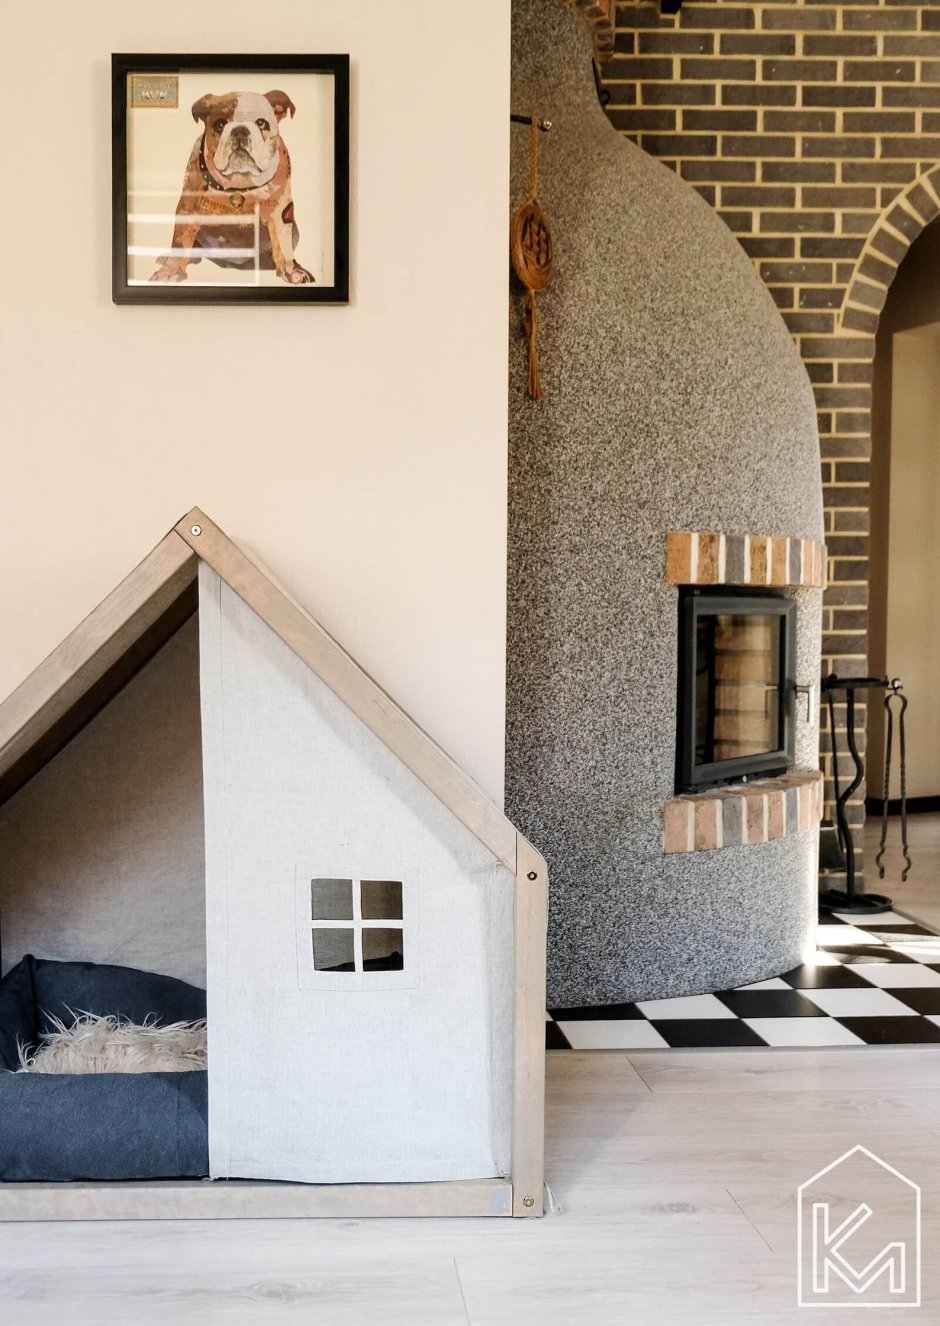 Дизайнерские домики для собак